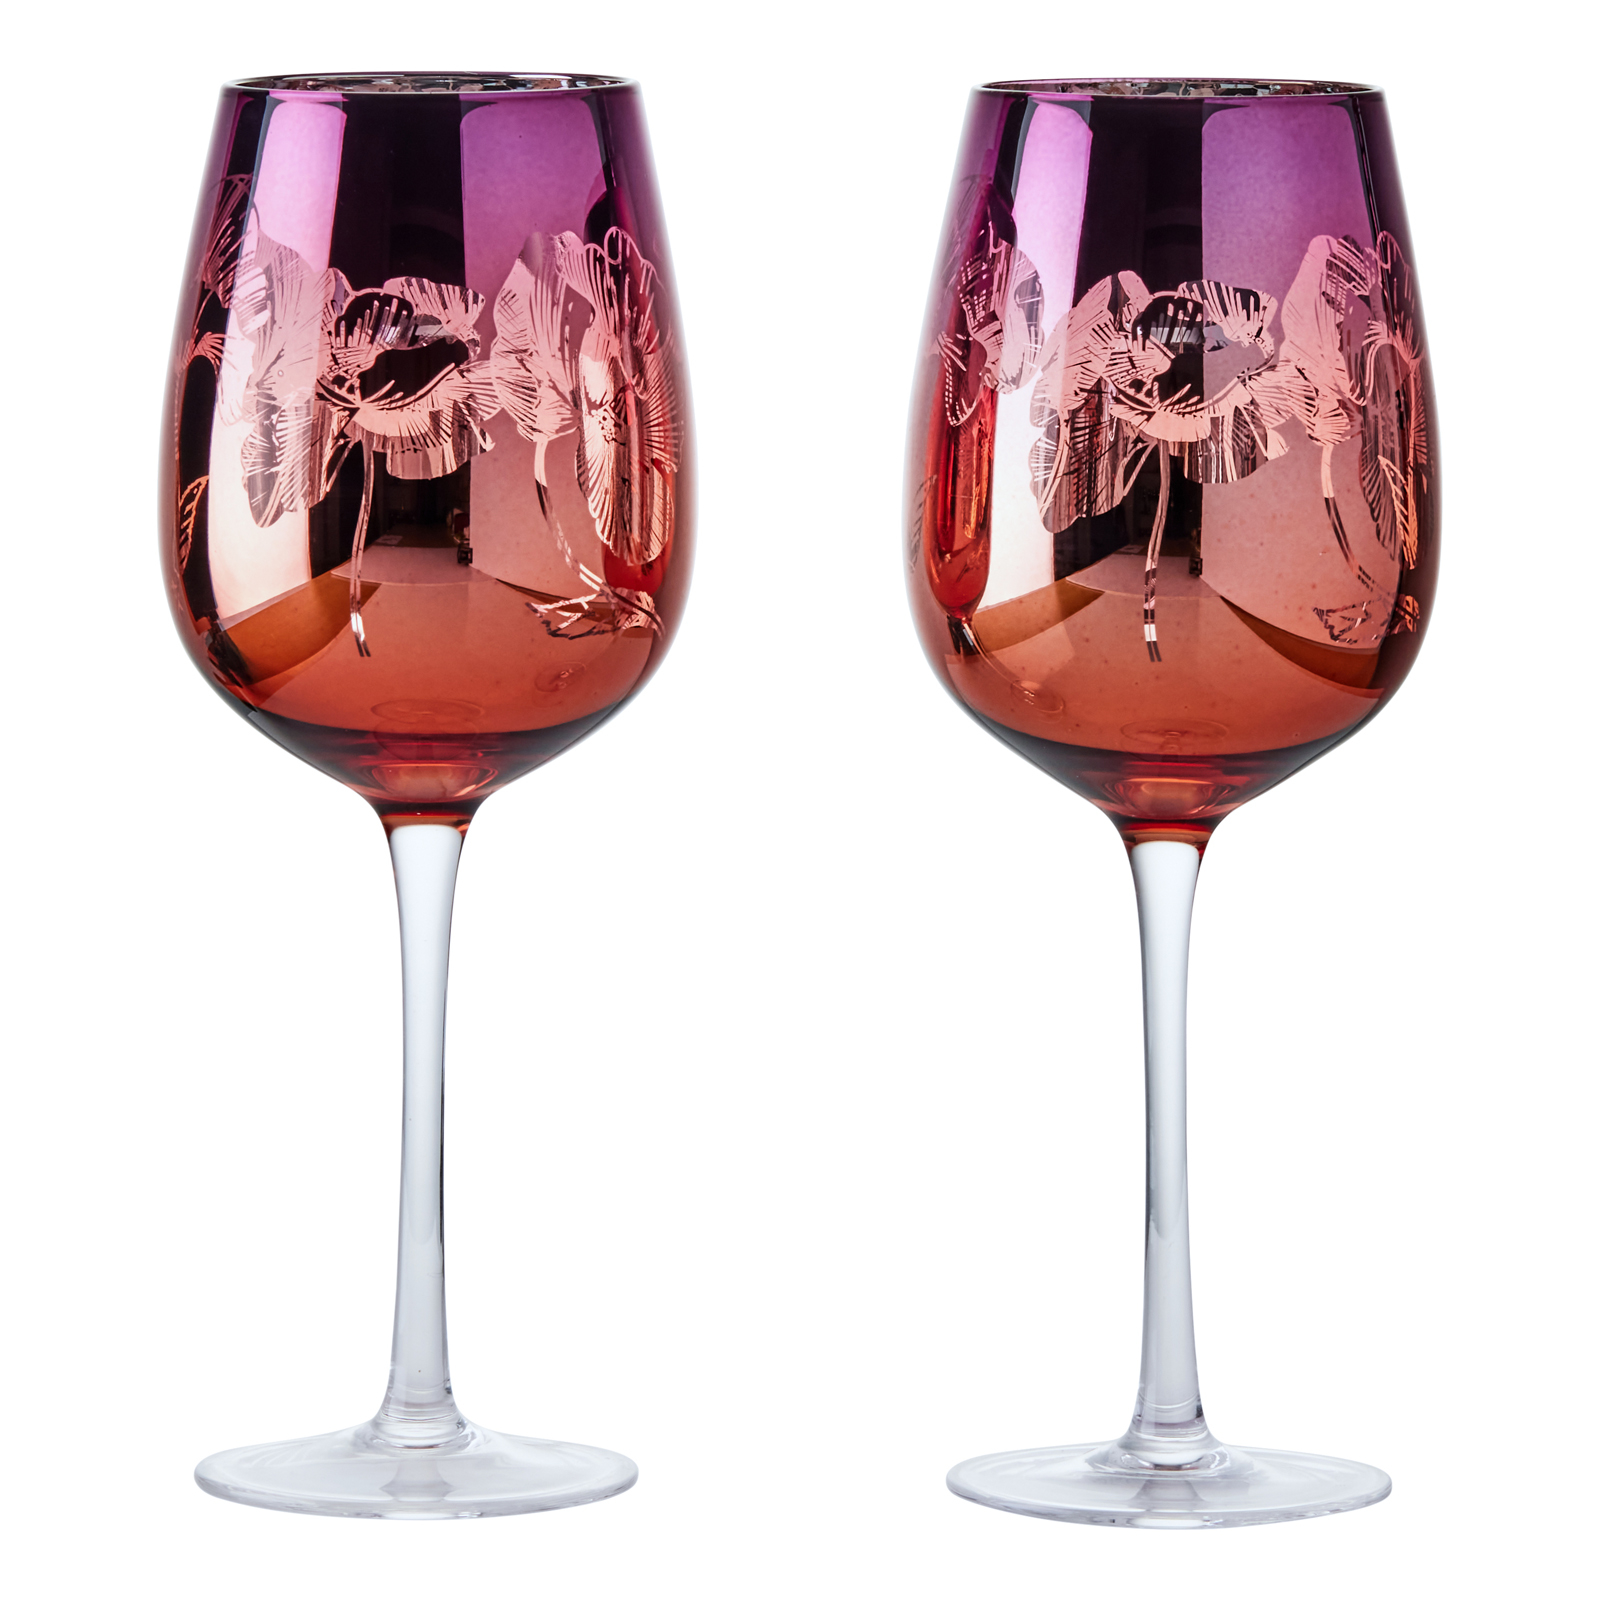 Visuel de Lot de 2 verres à vin by Artland - Bloom Magnifiquement décorés avec un design détaillé rose, orange et argent, ces délicats verres à vin comportent un bouquet de fleurs miroir, le tout sur un grand bol incurvé, et une tige haute pour une élégance ultime